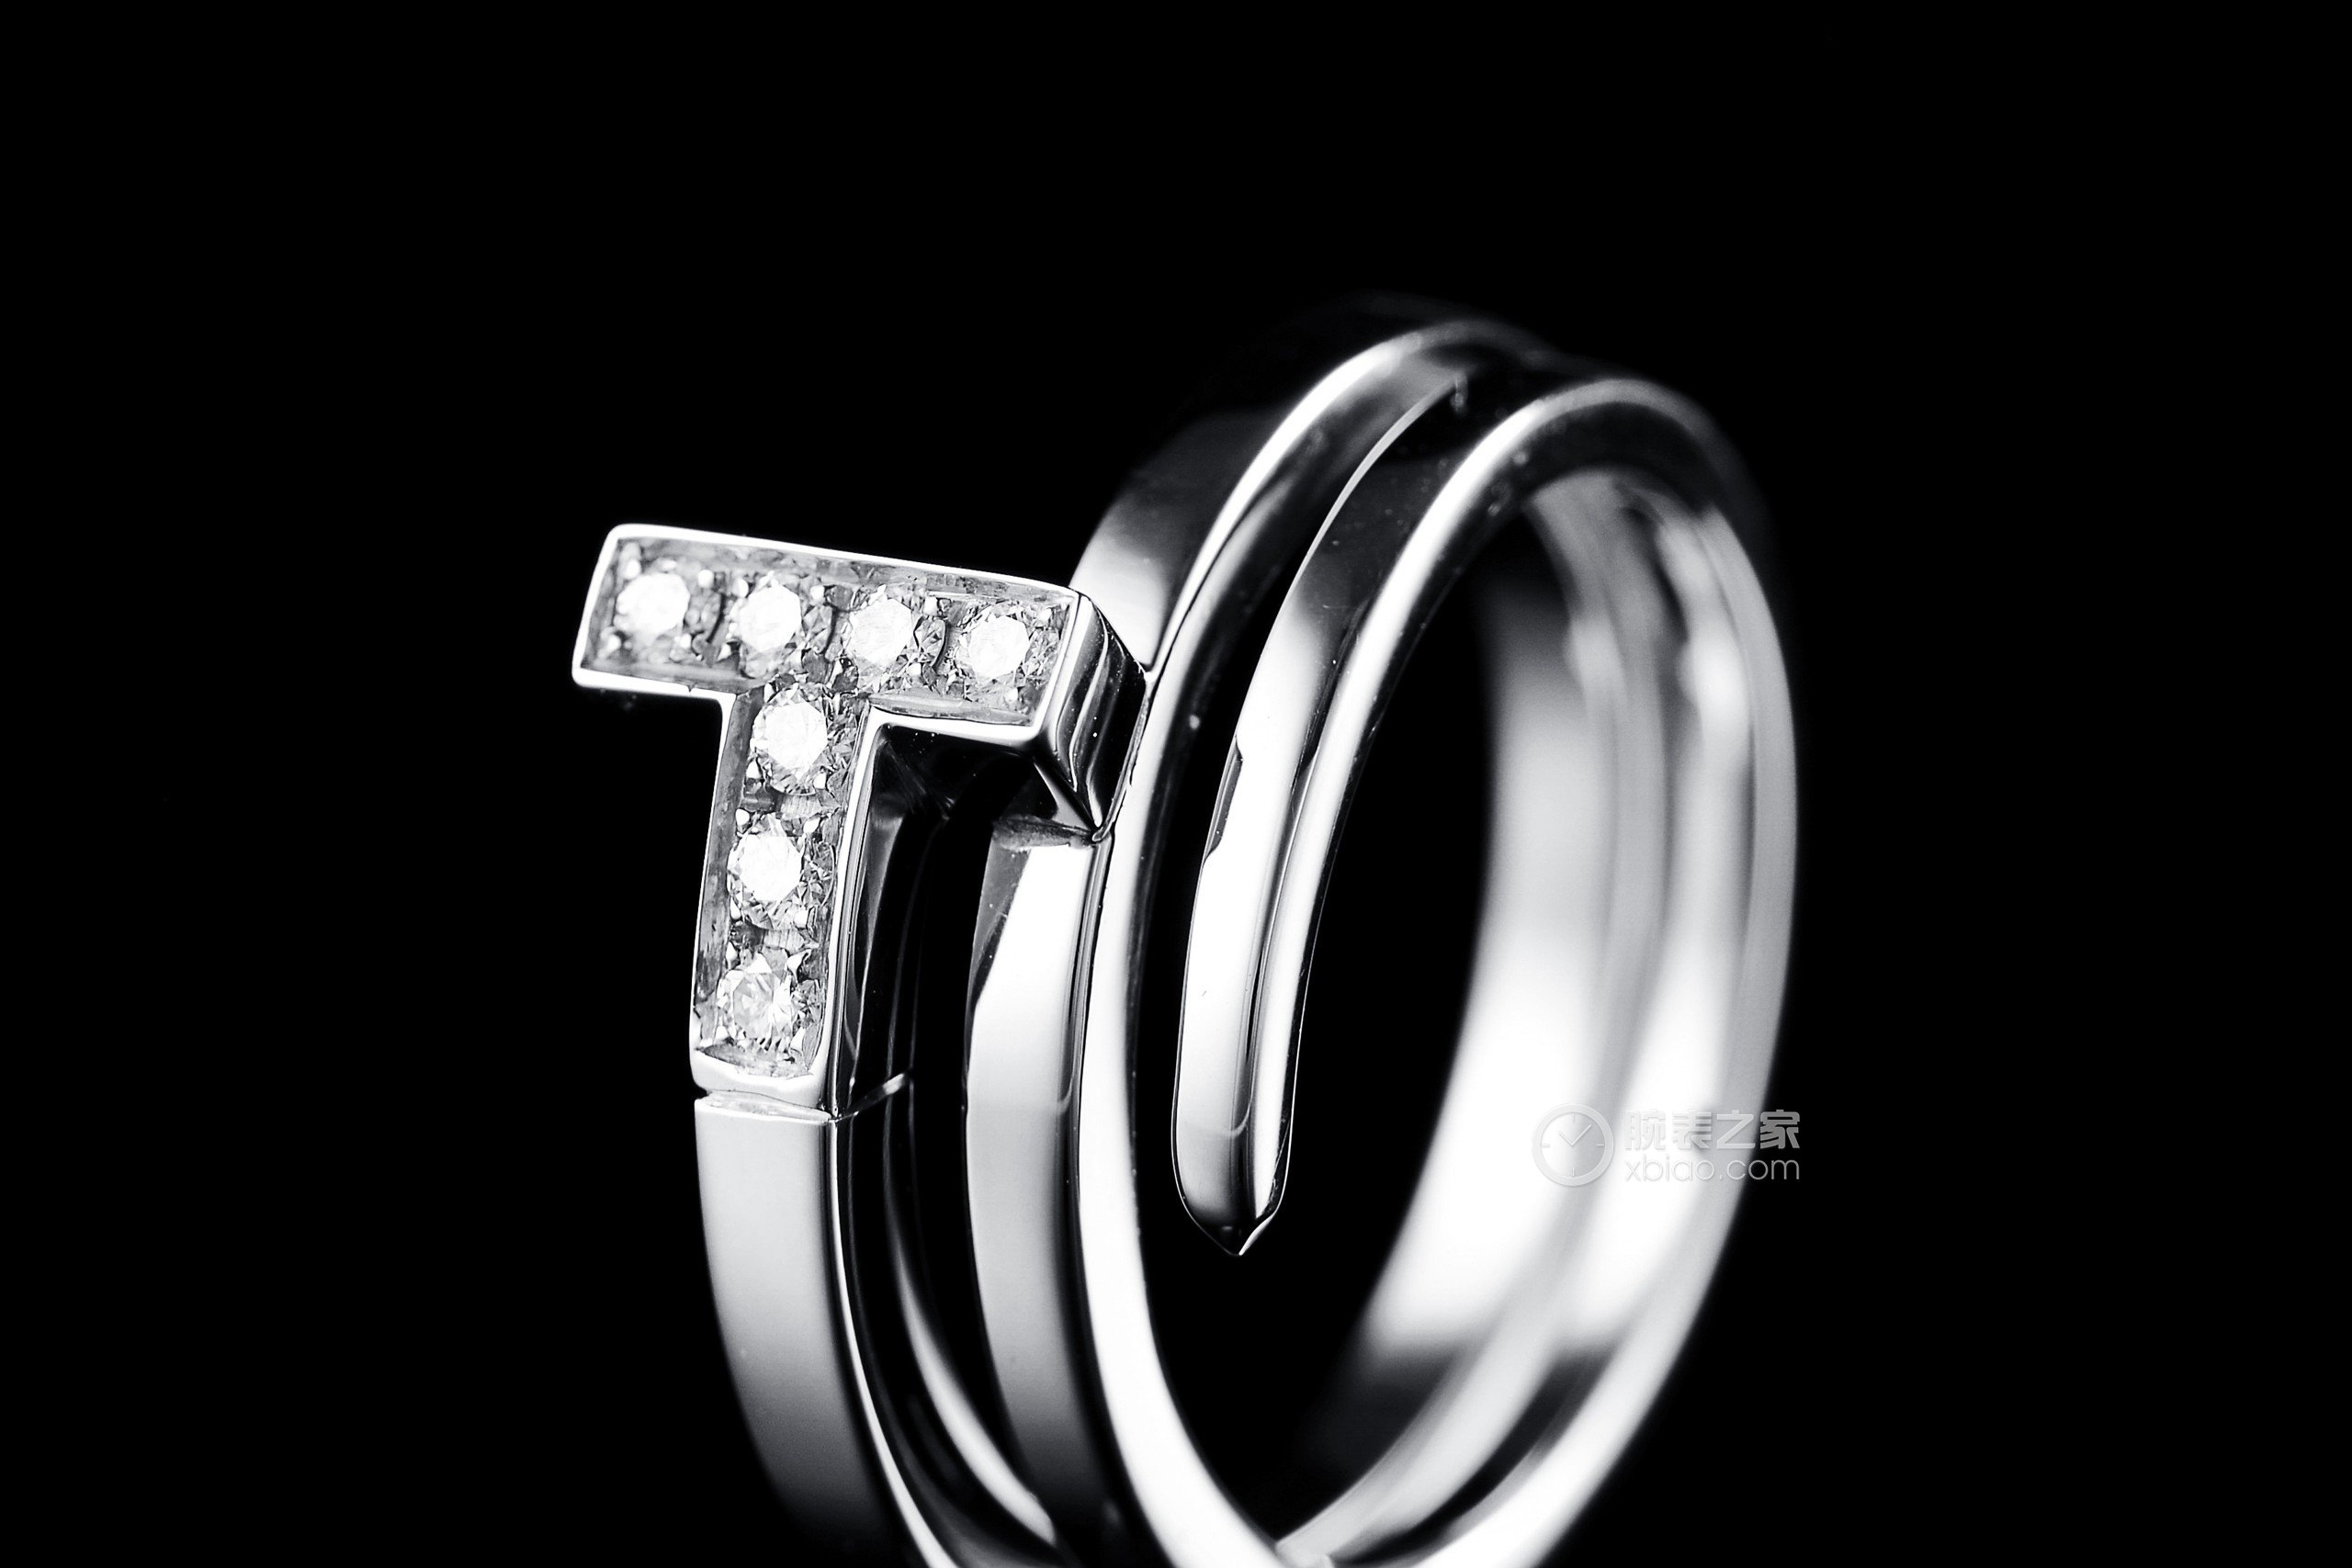 高清图|蒂芙尼男士结婚戒指戒指戒指图片1|腕表之家-珠宝